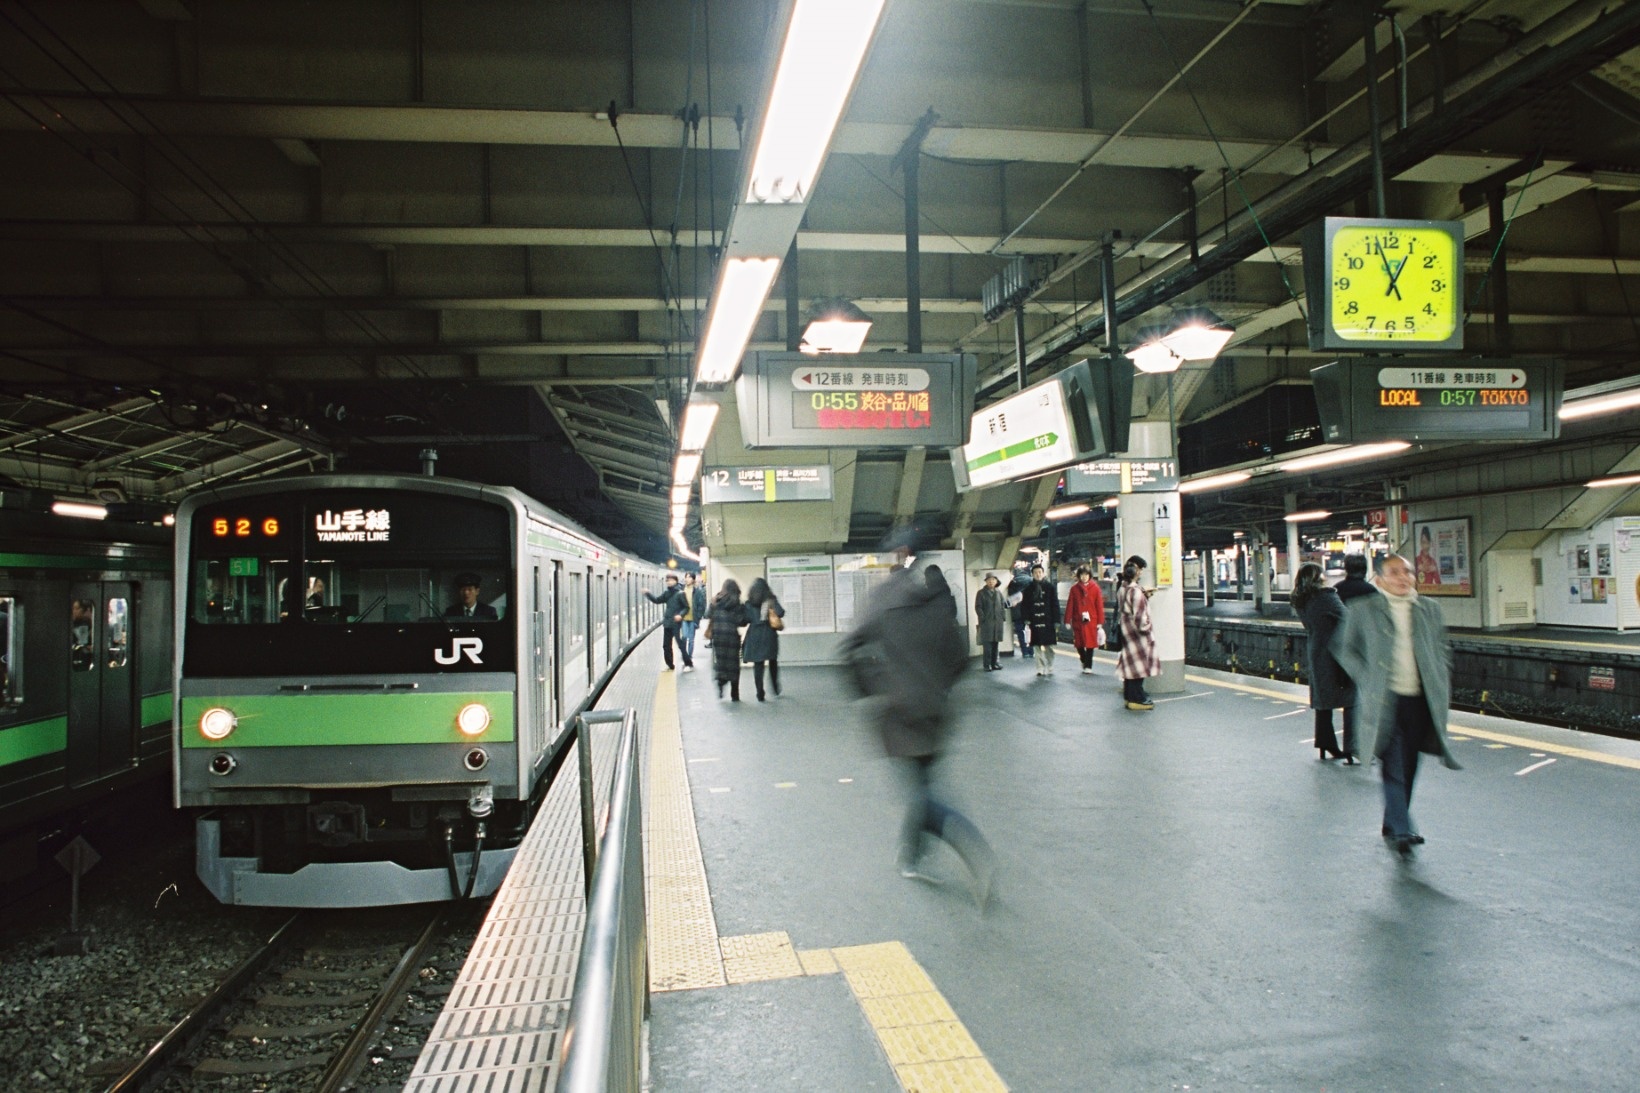 1999（平成11）年12月31日の新宿駅。西暦2000年問題が取りざたされた頃